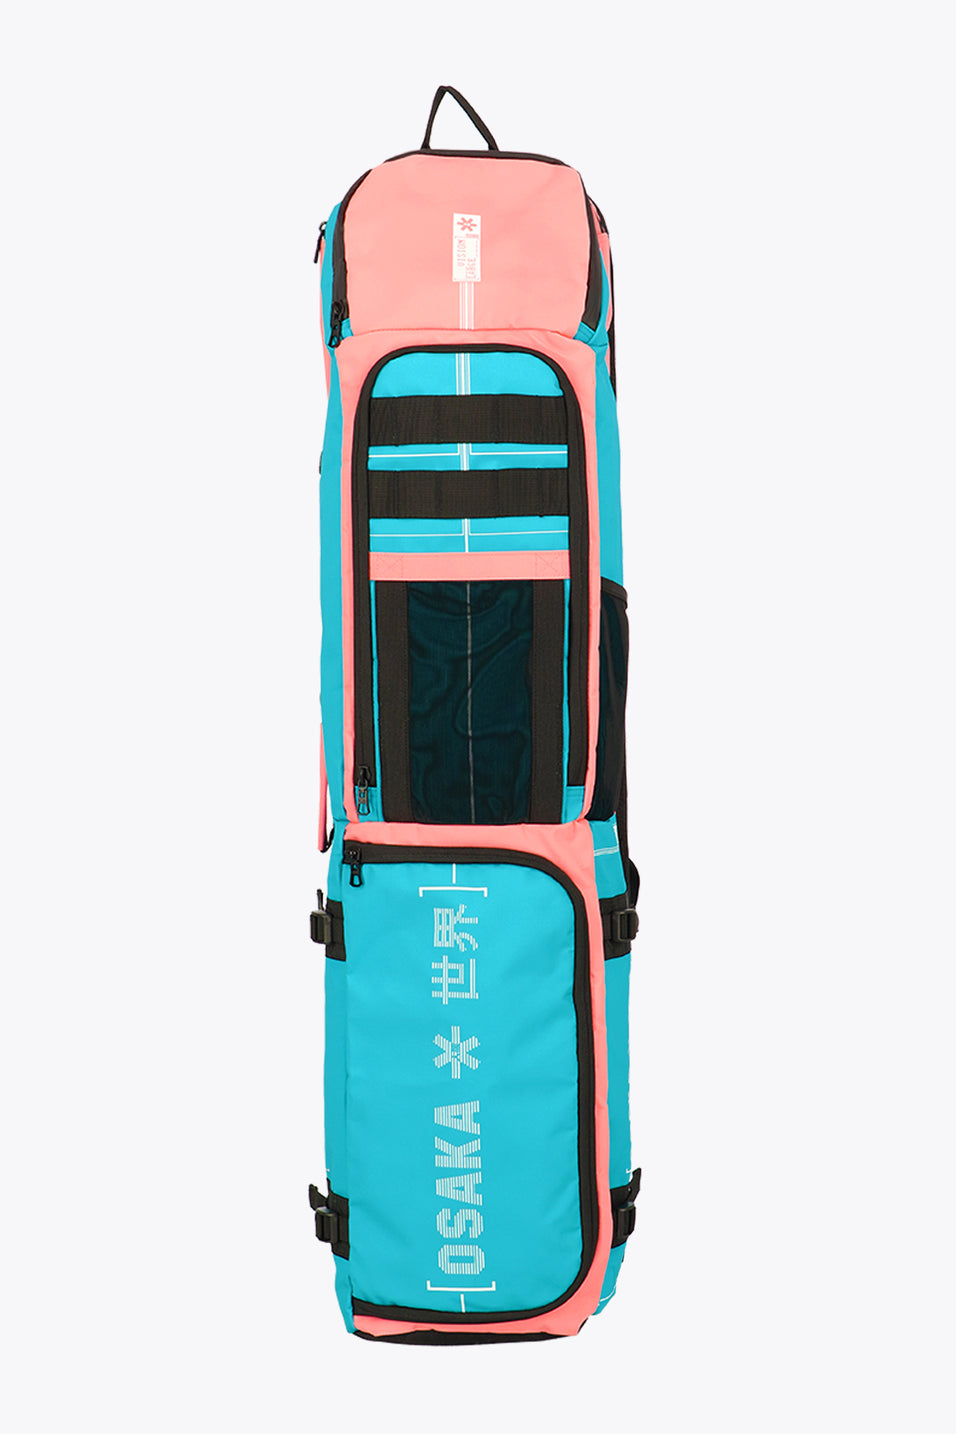 Osaka Hockey Pro Tour Large Stickbag - Aqua Pink Mix – Osaka World